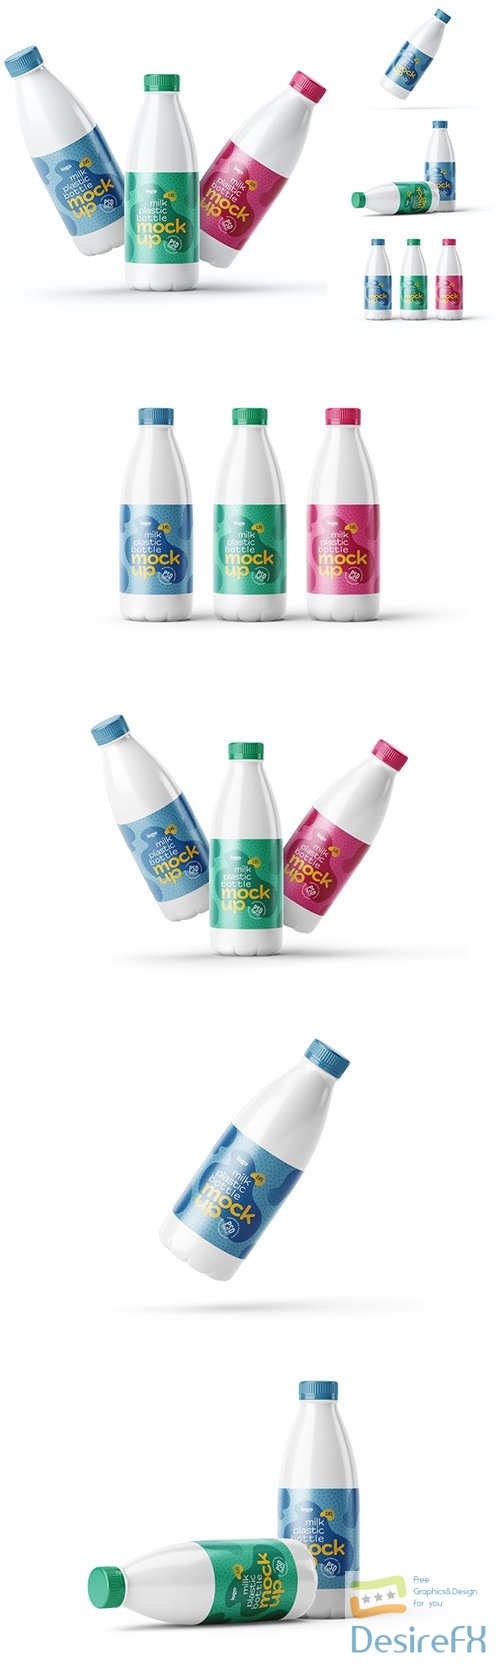 Plastic Milk Bottle Label Mockup Set PSD